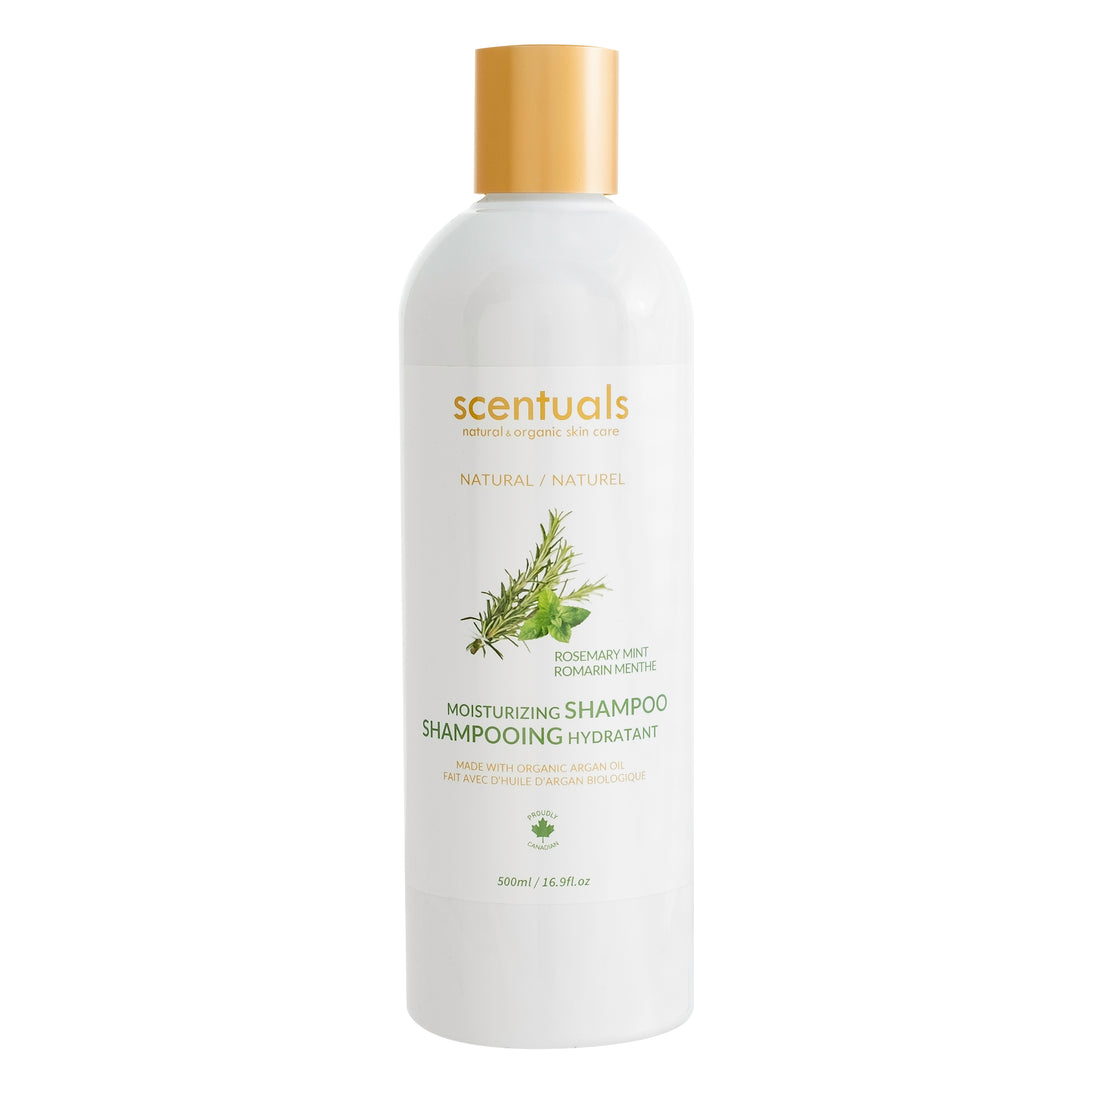 Dầu Gội Dưỡng Ẩm Hương Thảo Scentuals - ROSEMARY MINT 100% Natural moisturizing shampoo 500ml